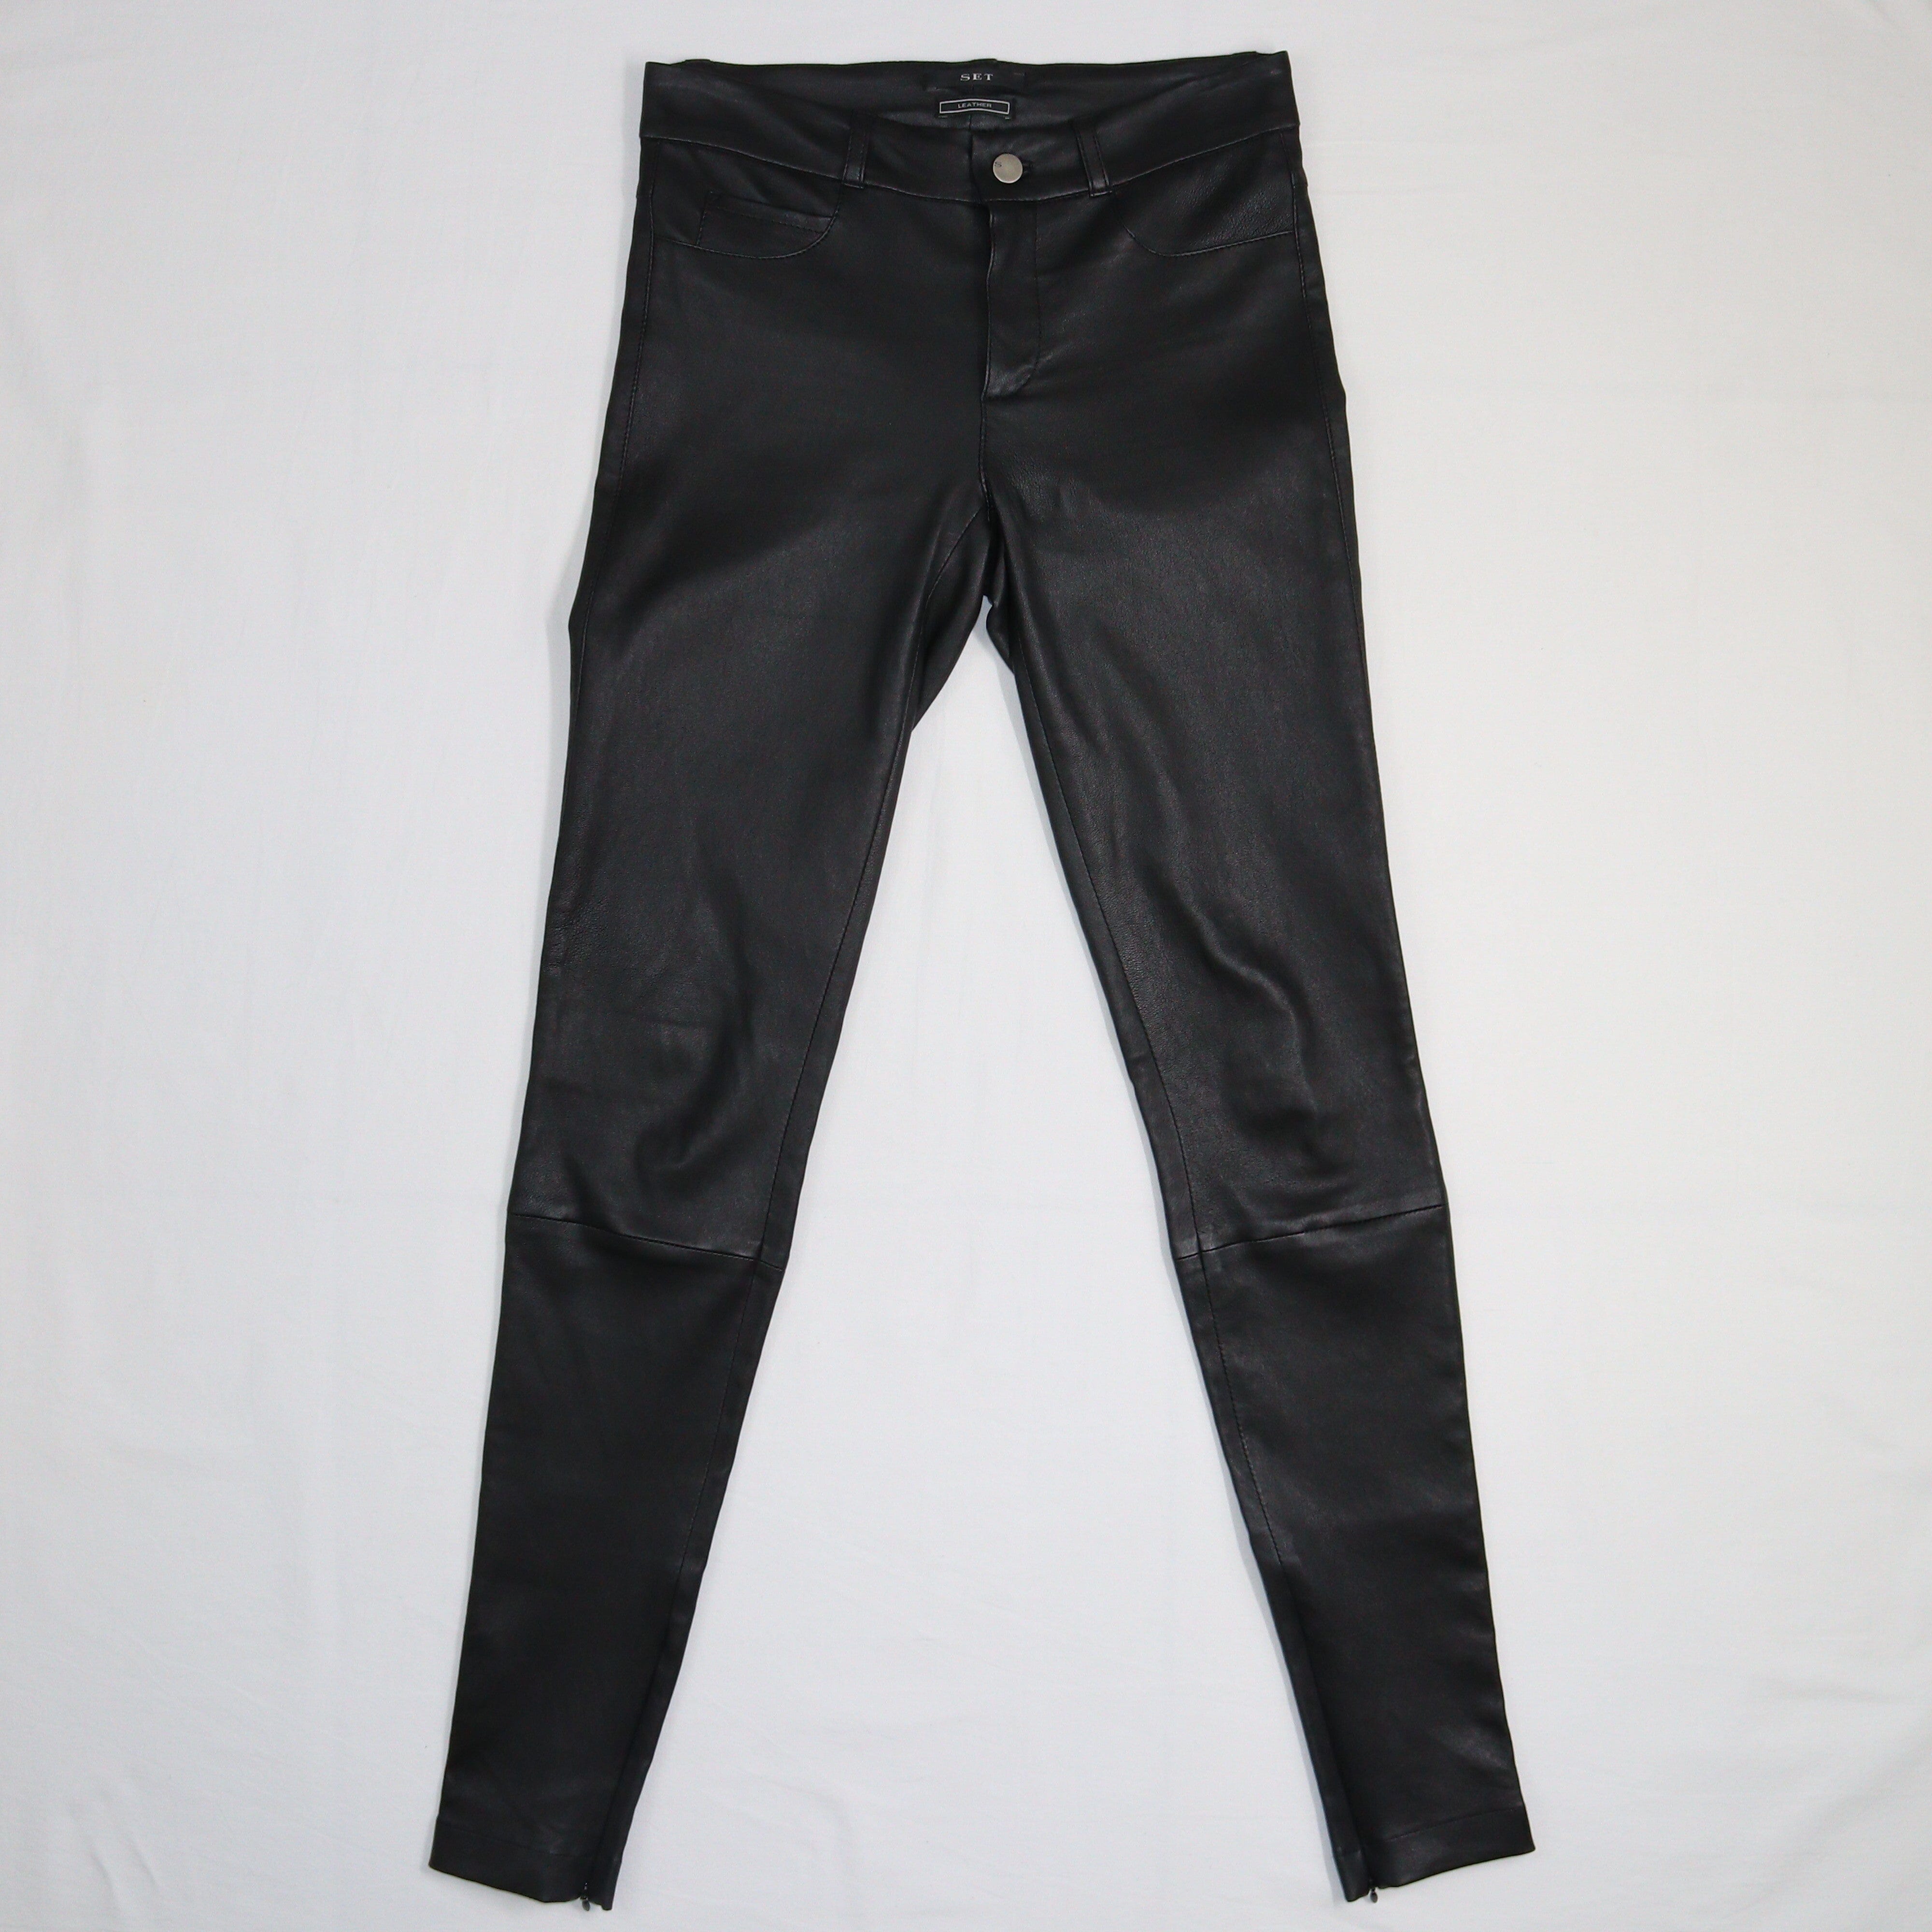 Black Ankle Zip Skinny Pants Clothing Set 